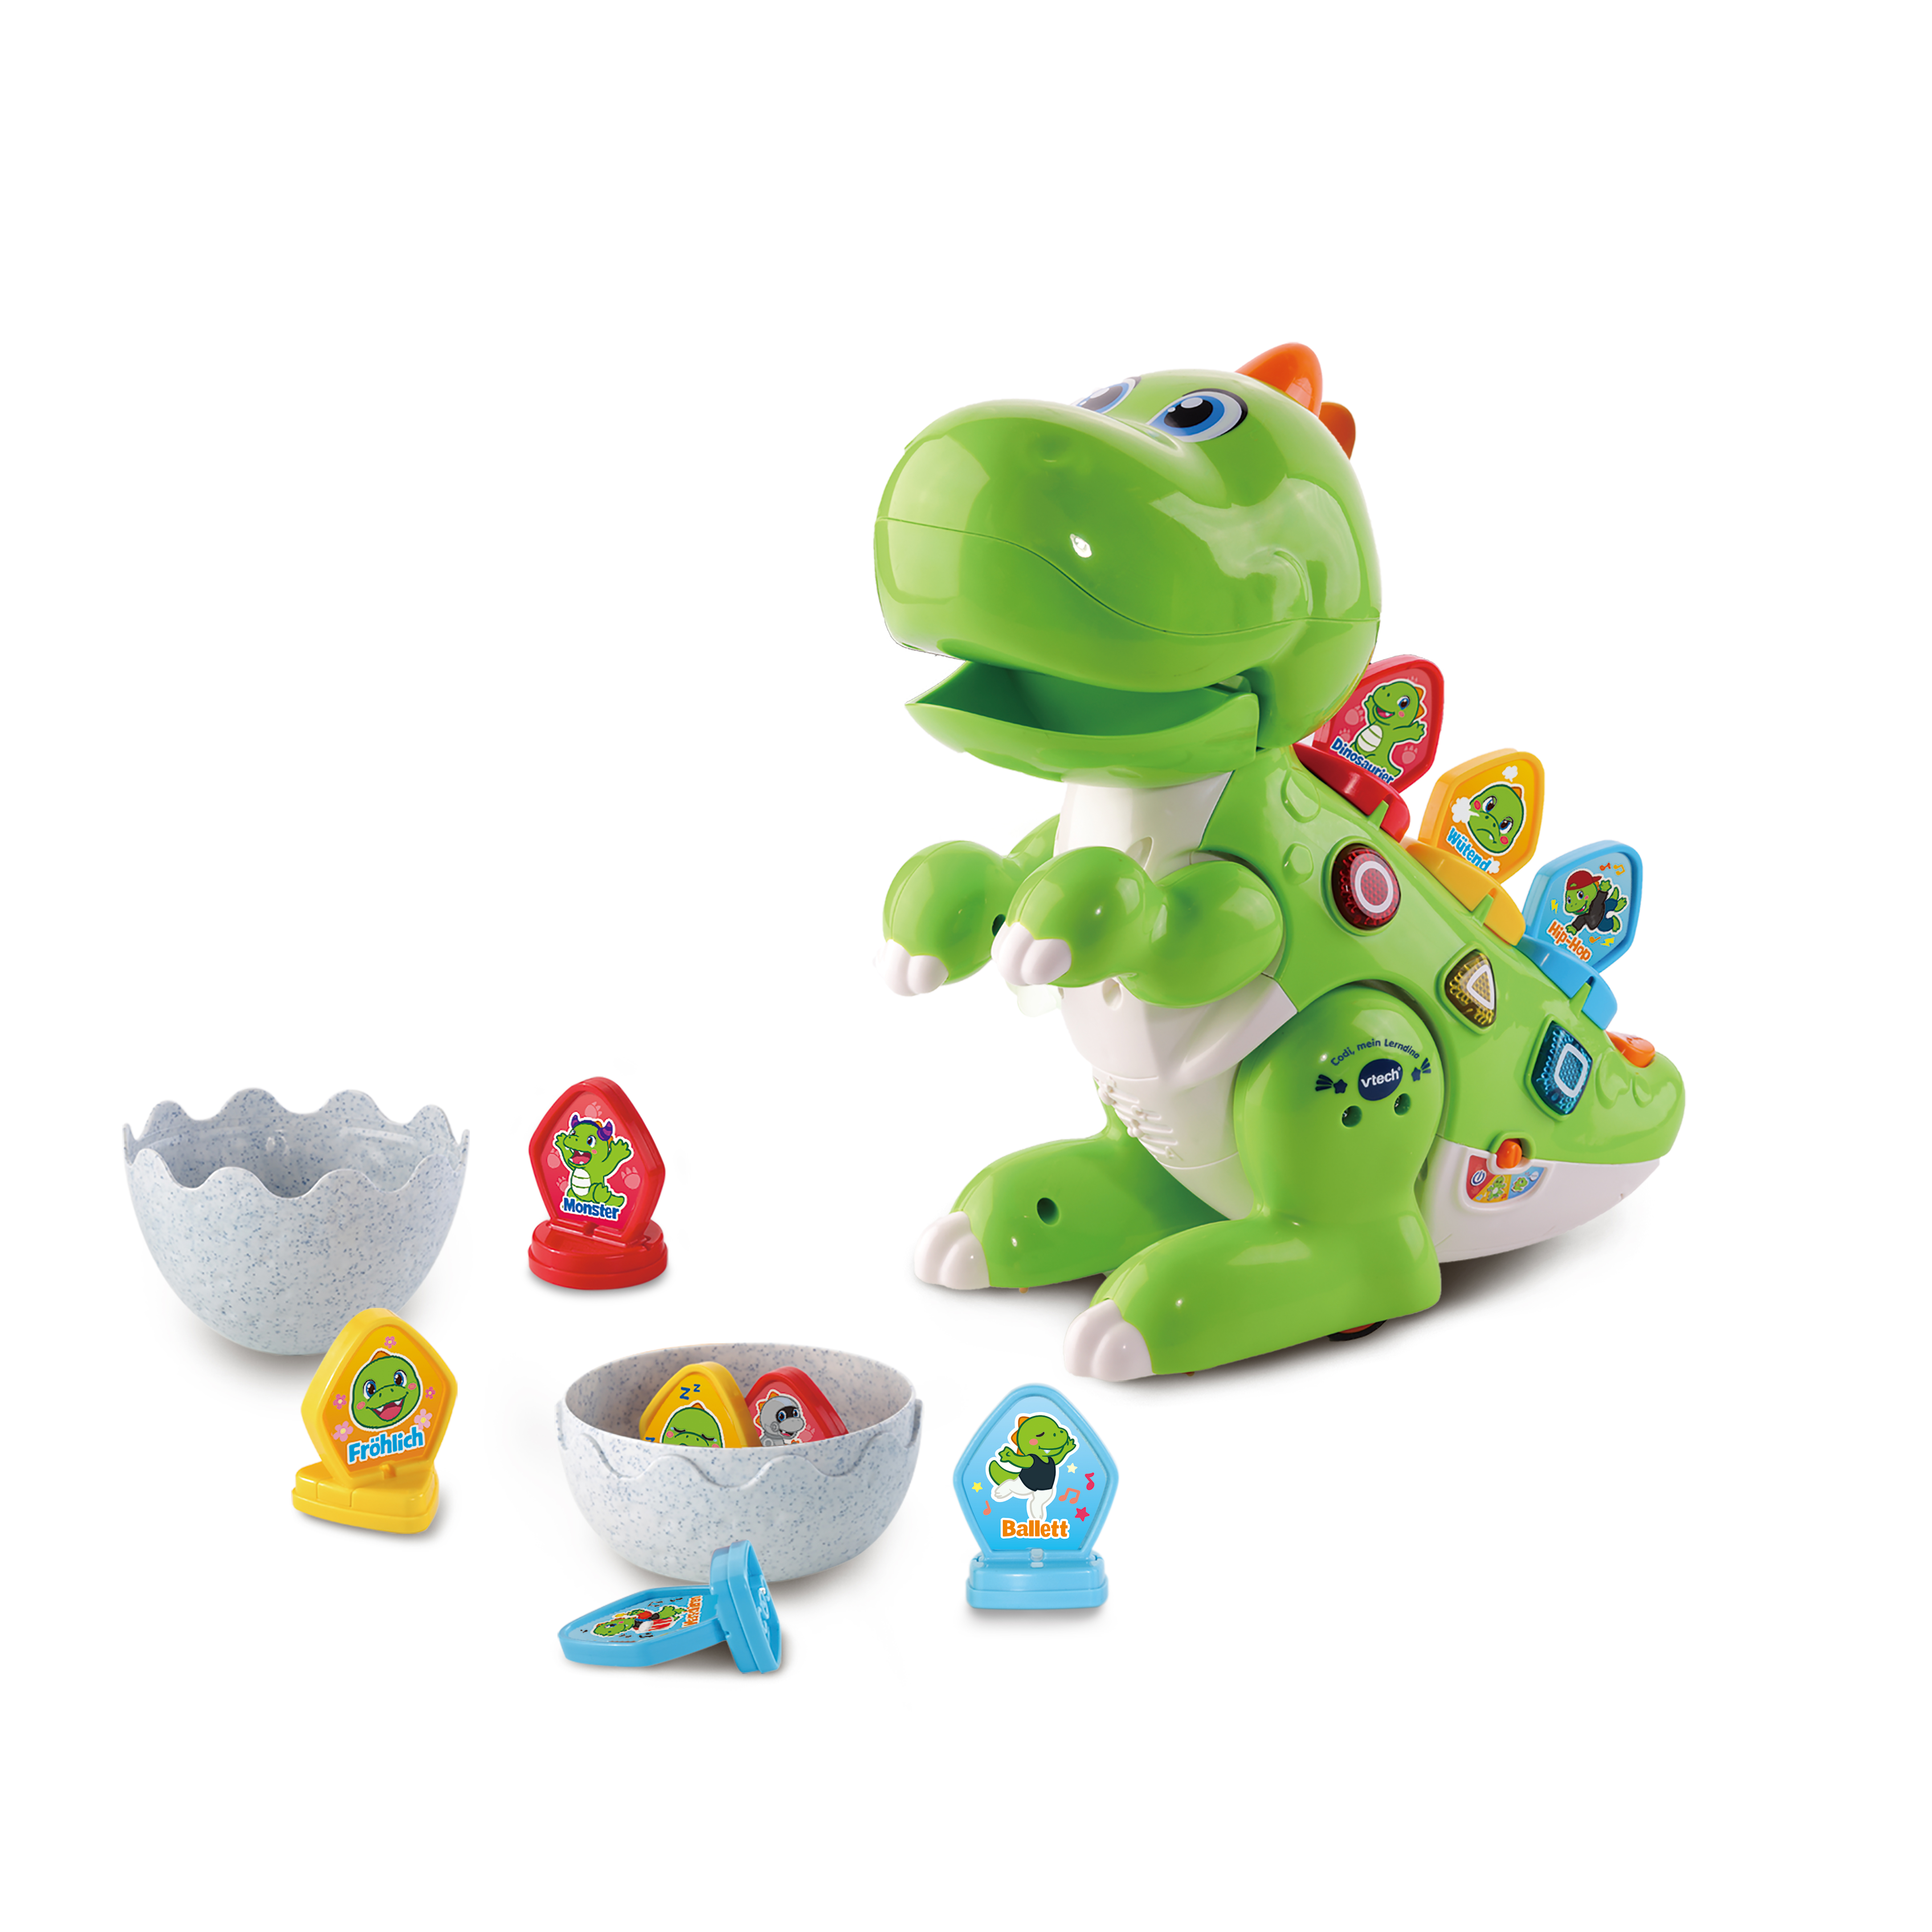 VTech Baby Codi Mein Lern-Dino Lern-Spielzeug Dinosaurier Figur Motorik Musik